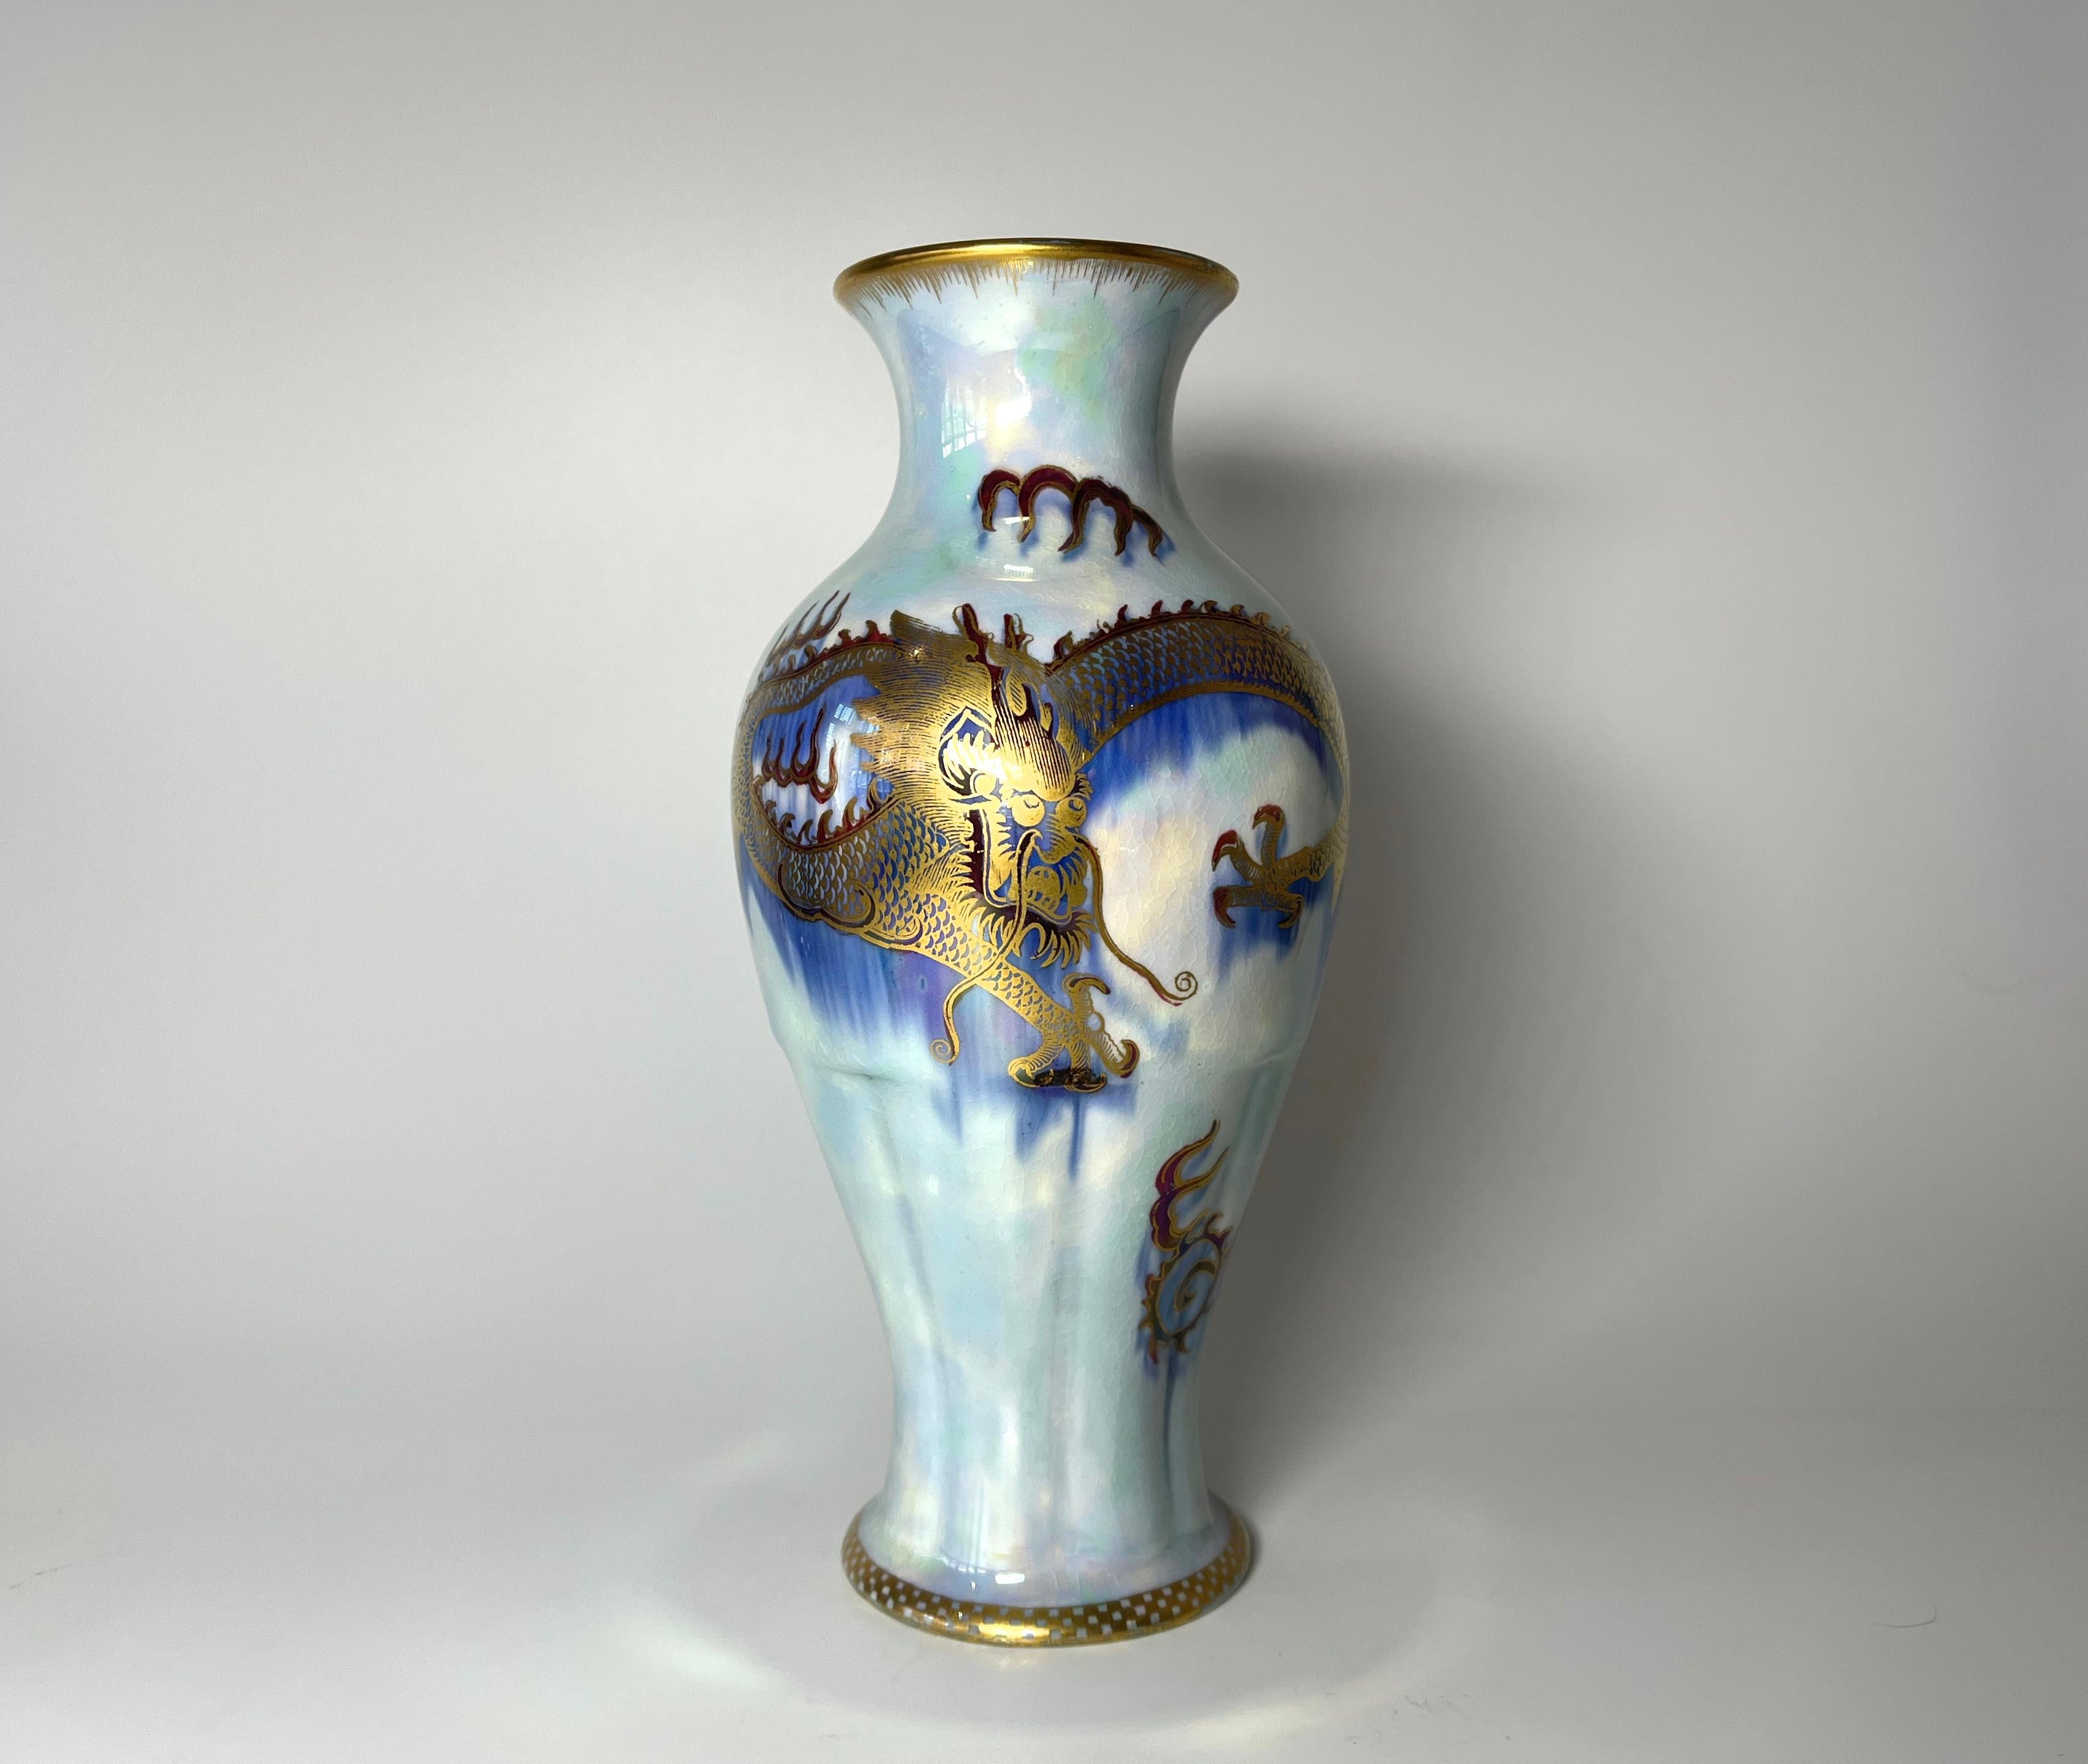 Un vase dramatique en porcelaine dragon lustrée bleu perle créé dans les années 1920 par Daisy Makeig-Jones pour Wedgwood,
Dominée par un audacieux dragon doré sur un fond bleu azur. Des motifs exotiques d'écriture dorée décorent parmi les marbrures